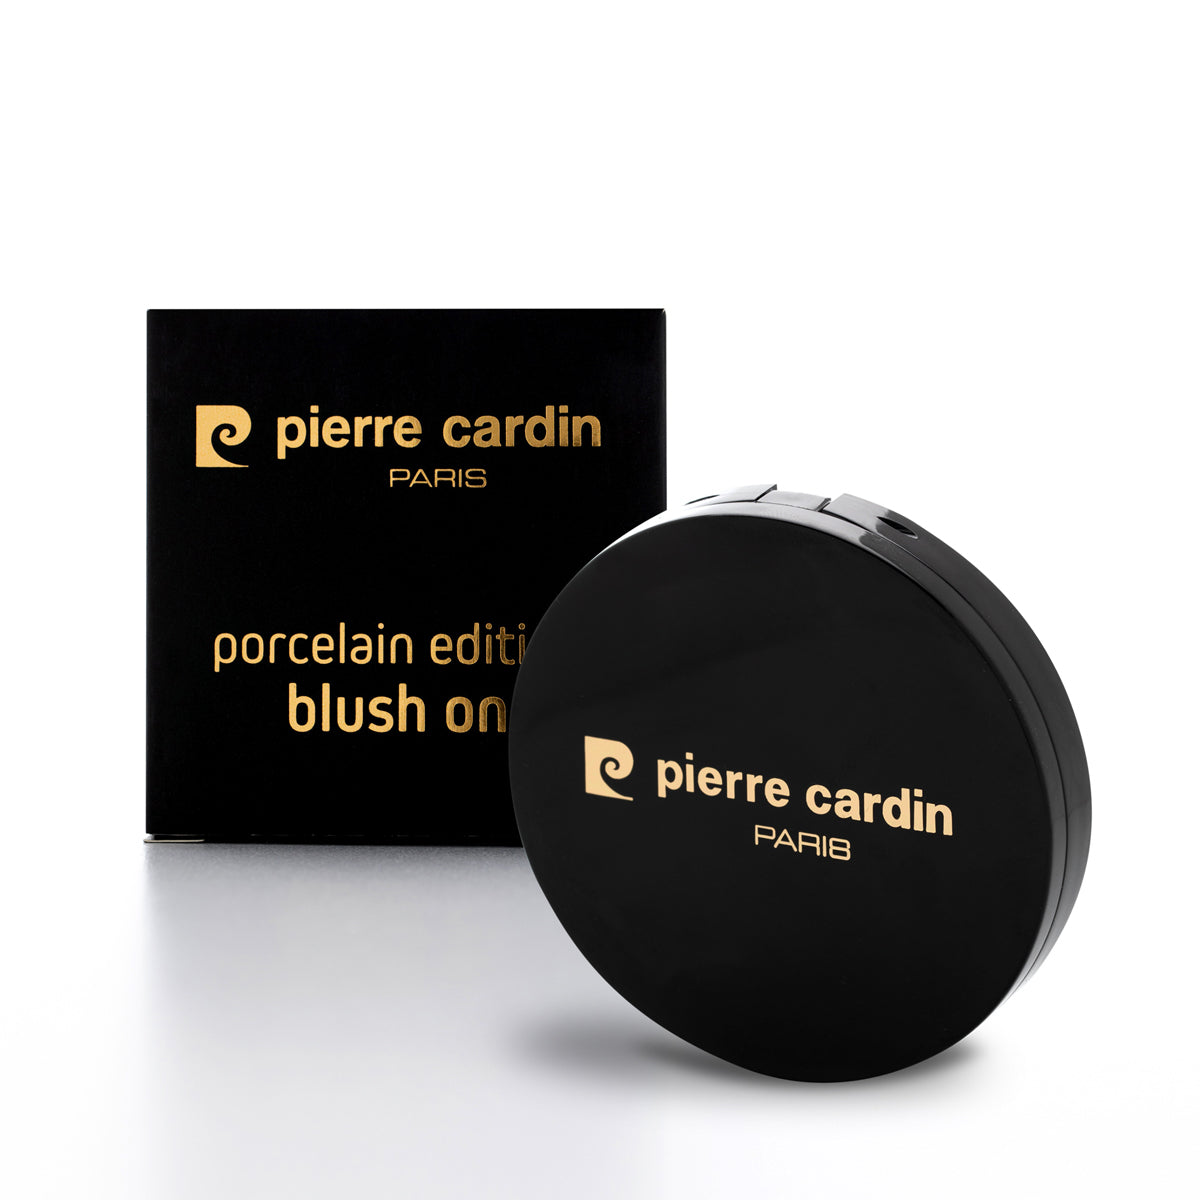 Pierre Cardin Édition Porcelaine Blush Sur Pêche 165 - 13 g